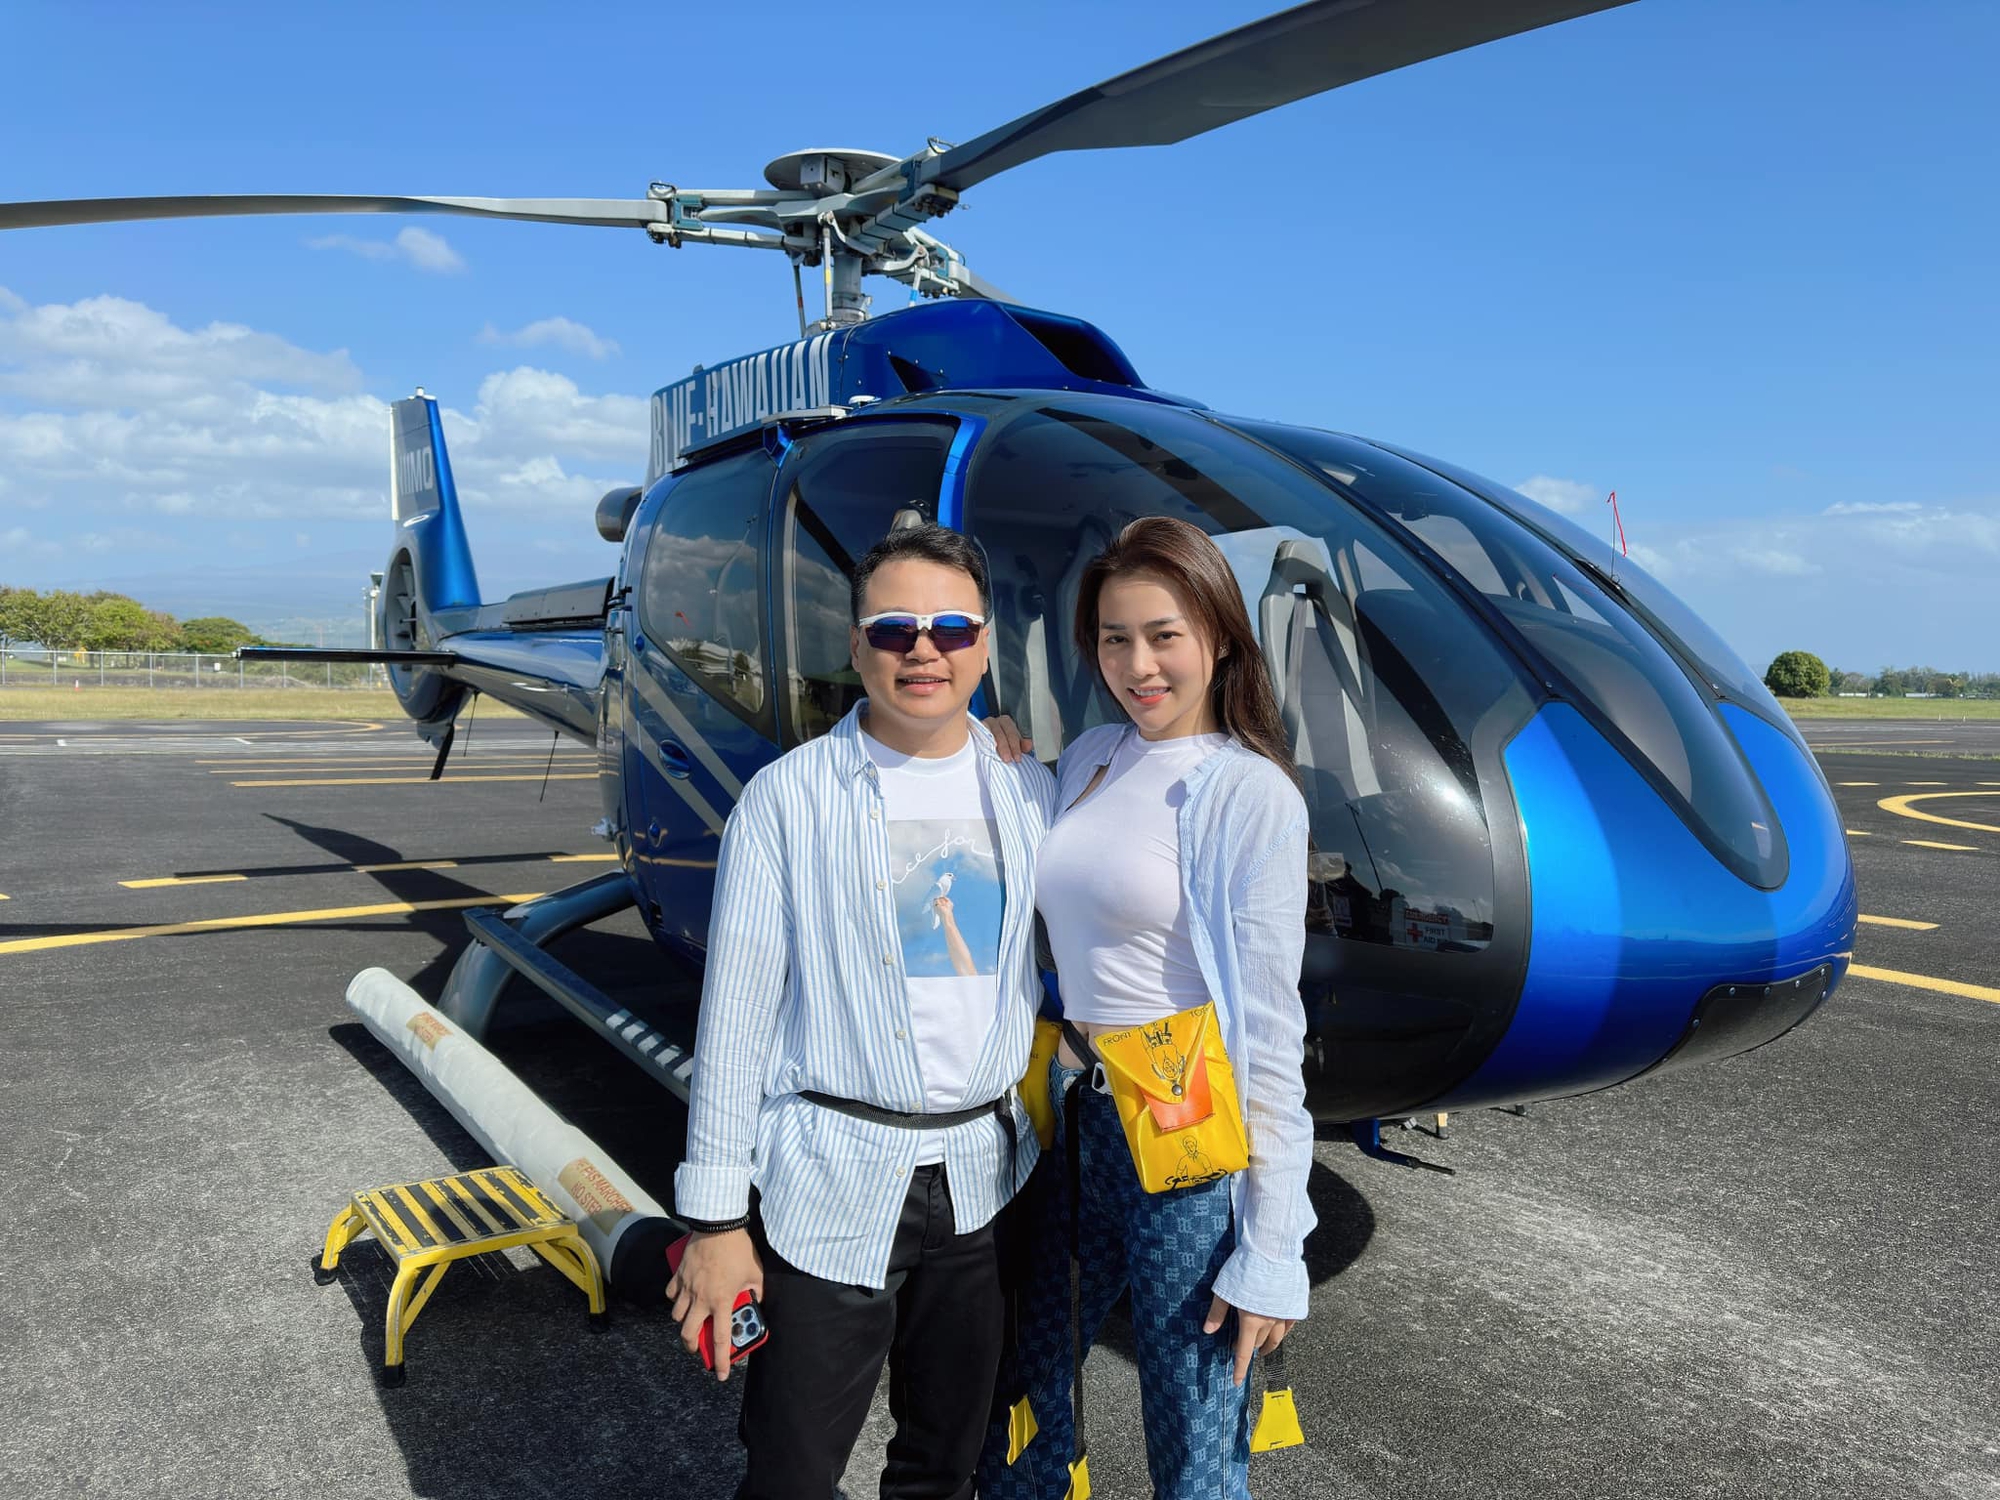 Shark Bình và vợ thuê trực thăng ngắm miệng núi lửa và cái kết khiến dân tình "cười ngất"